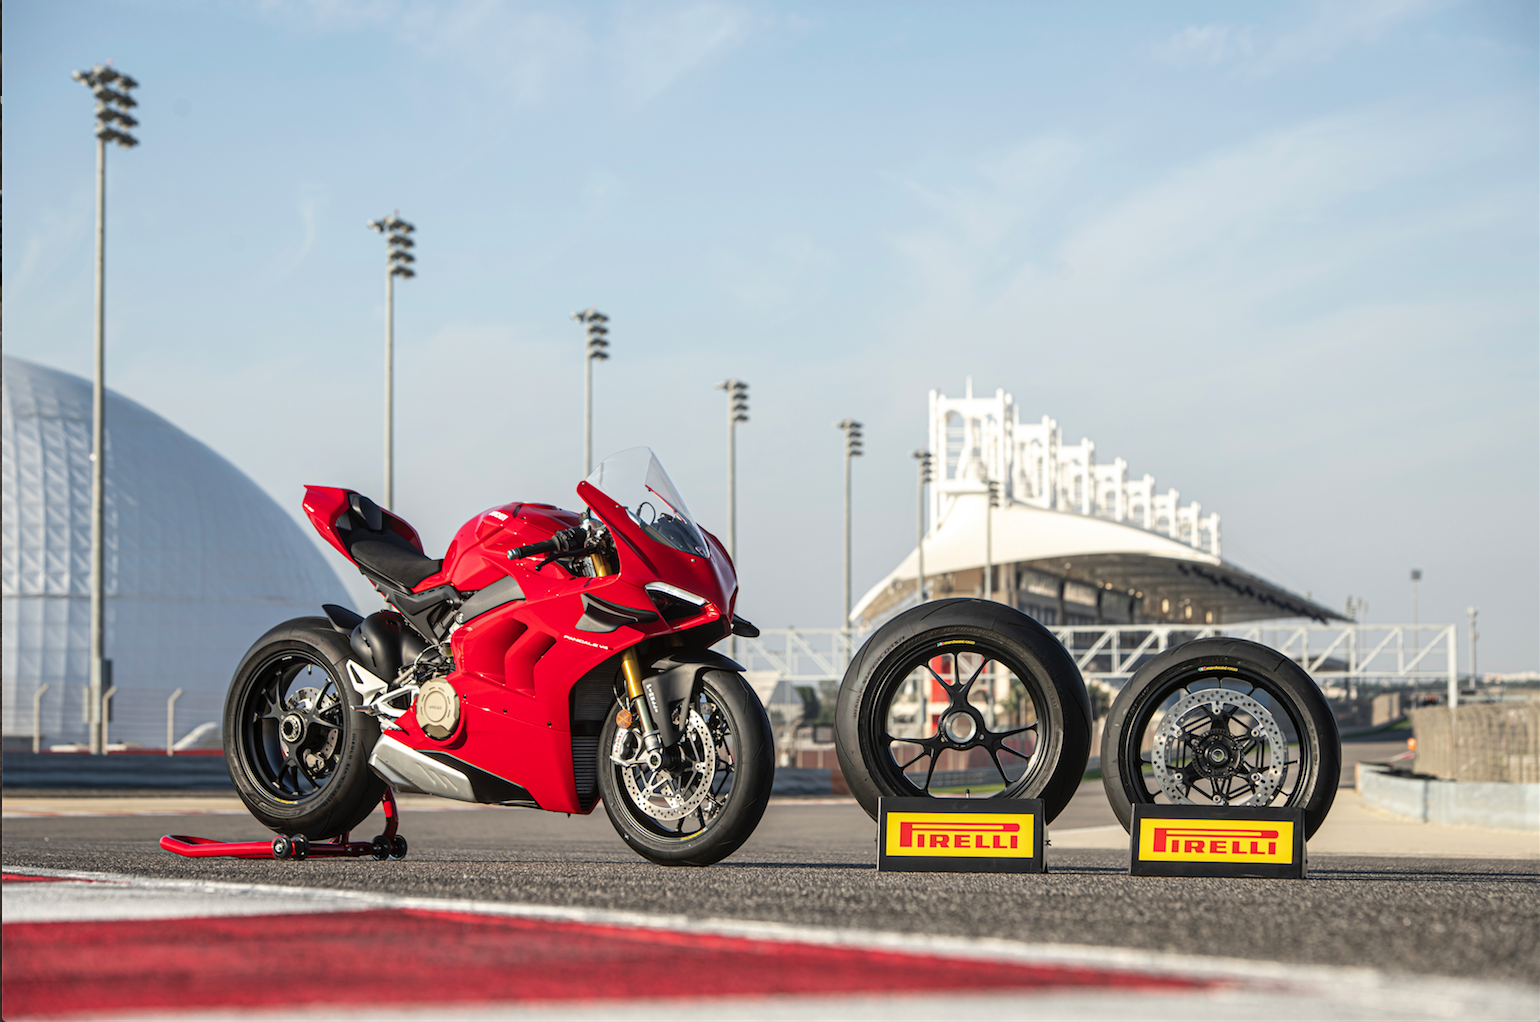 Pirelli & Diablo Supercorsa SP Are With Ducati